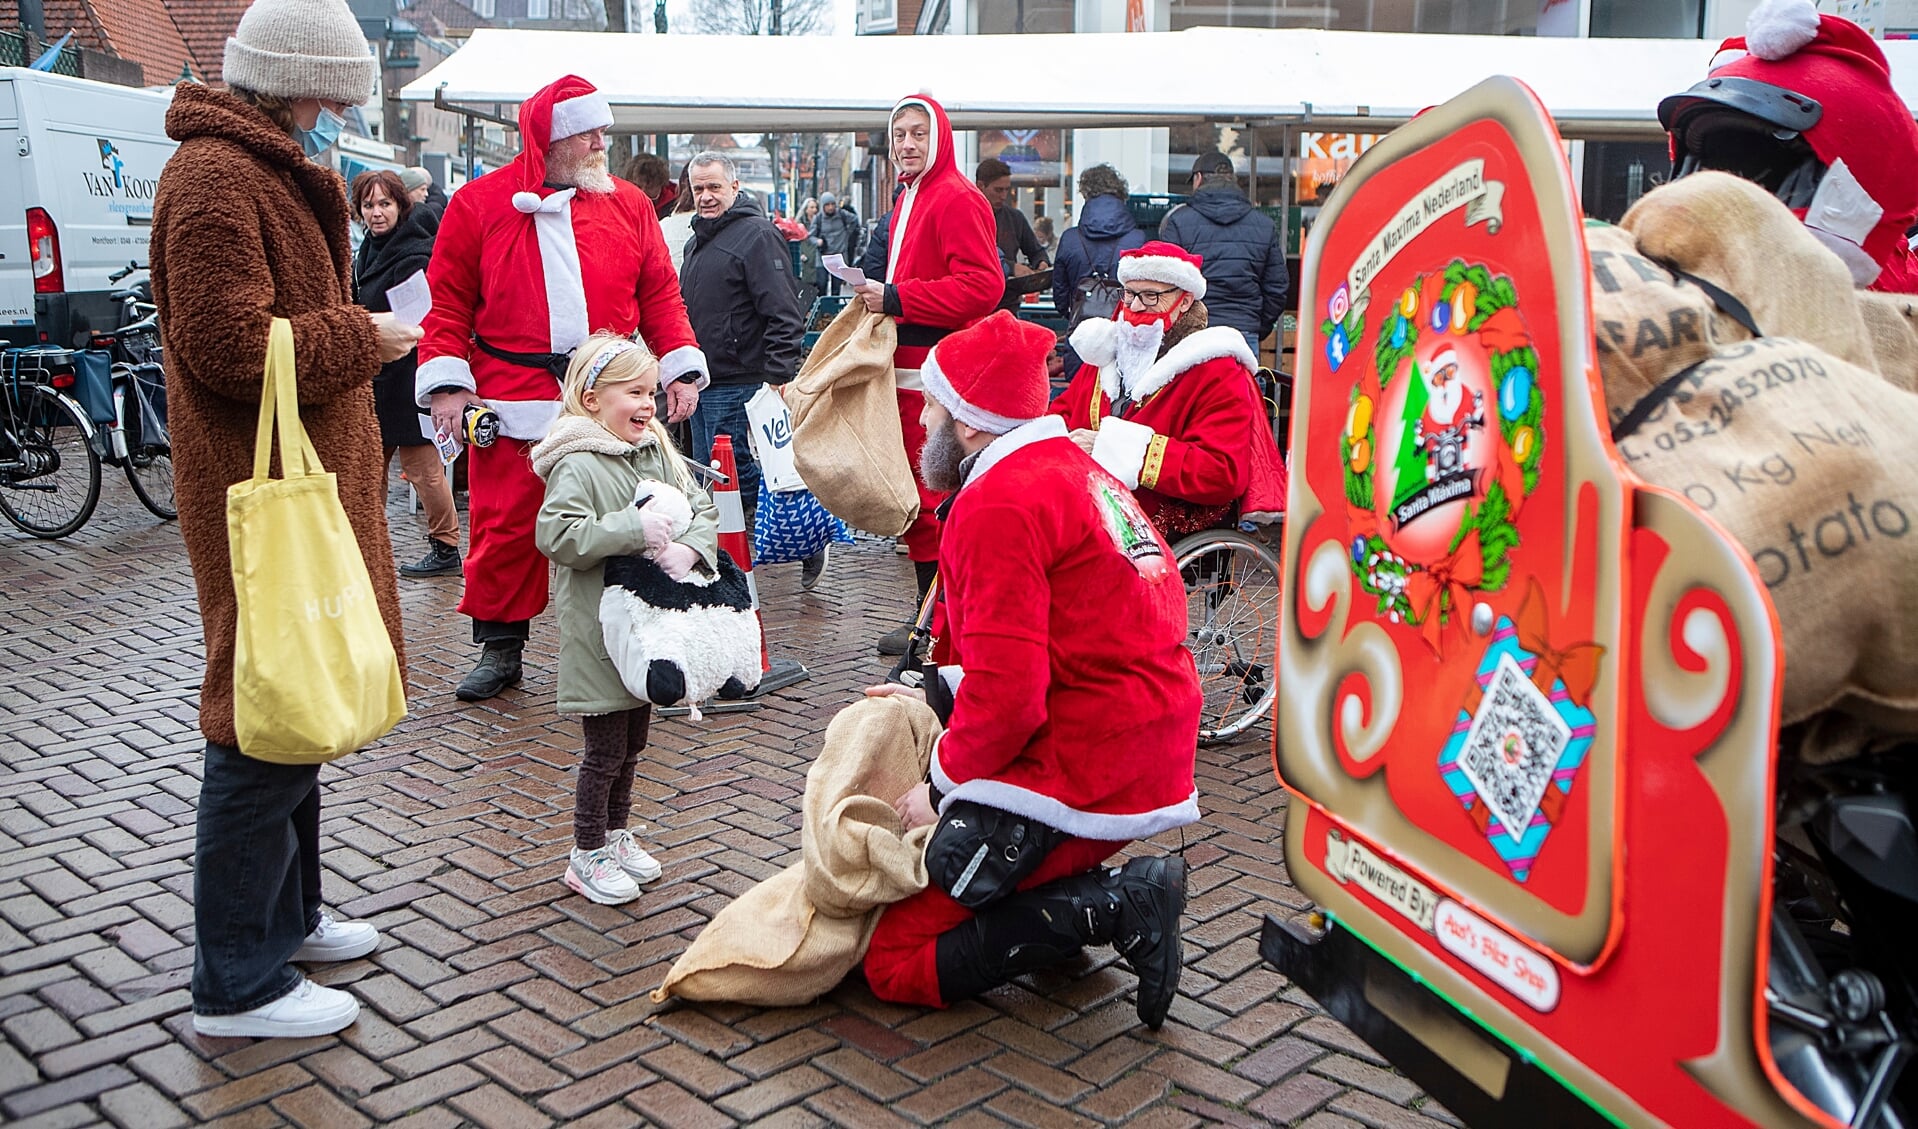 Santa Maxima Nederland deelt gratis knuffels uit om aandacht te vragen voor kinderoncologie.